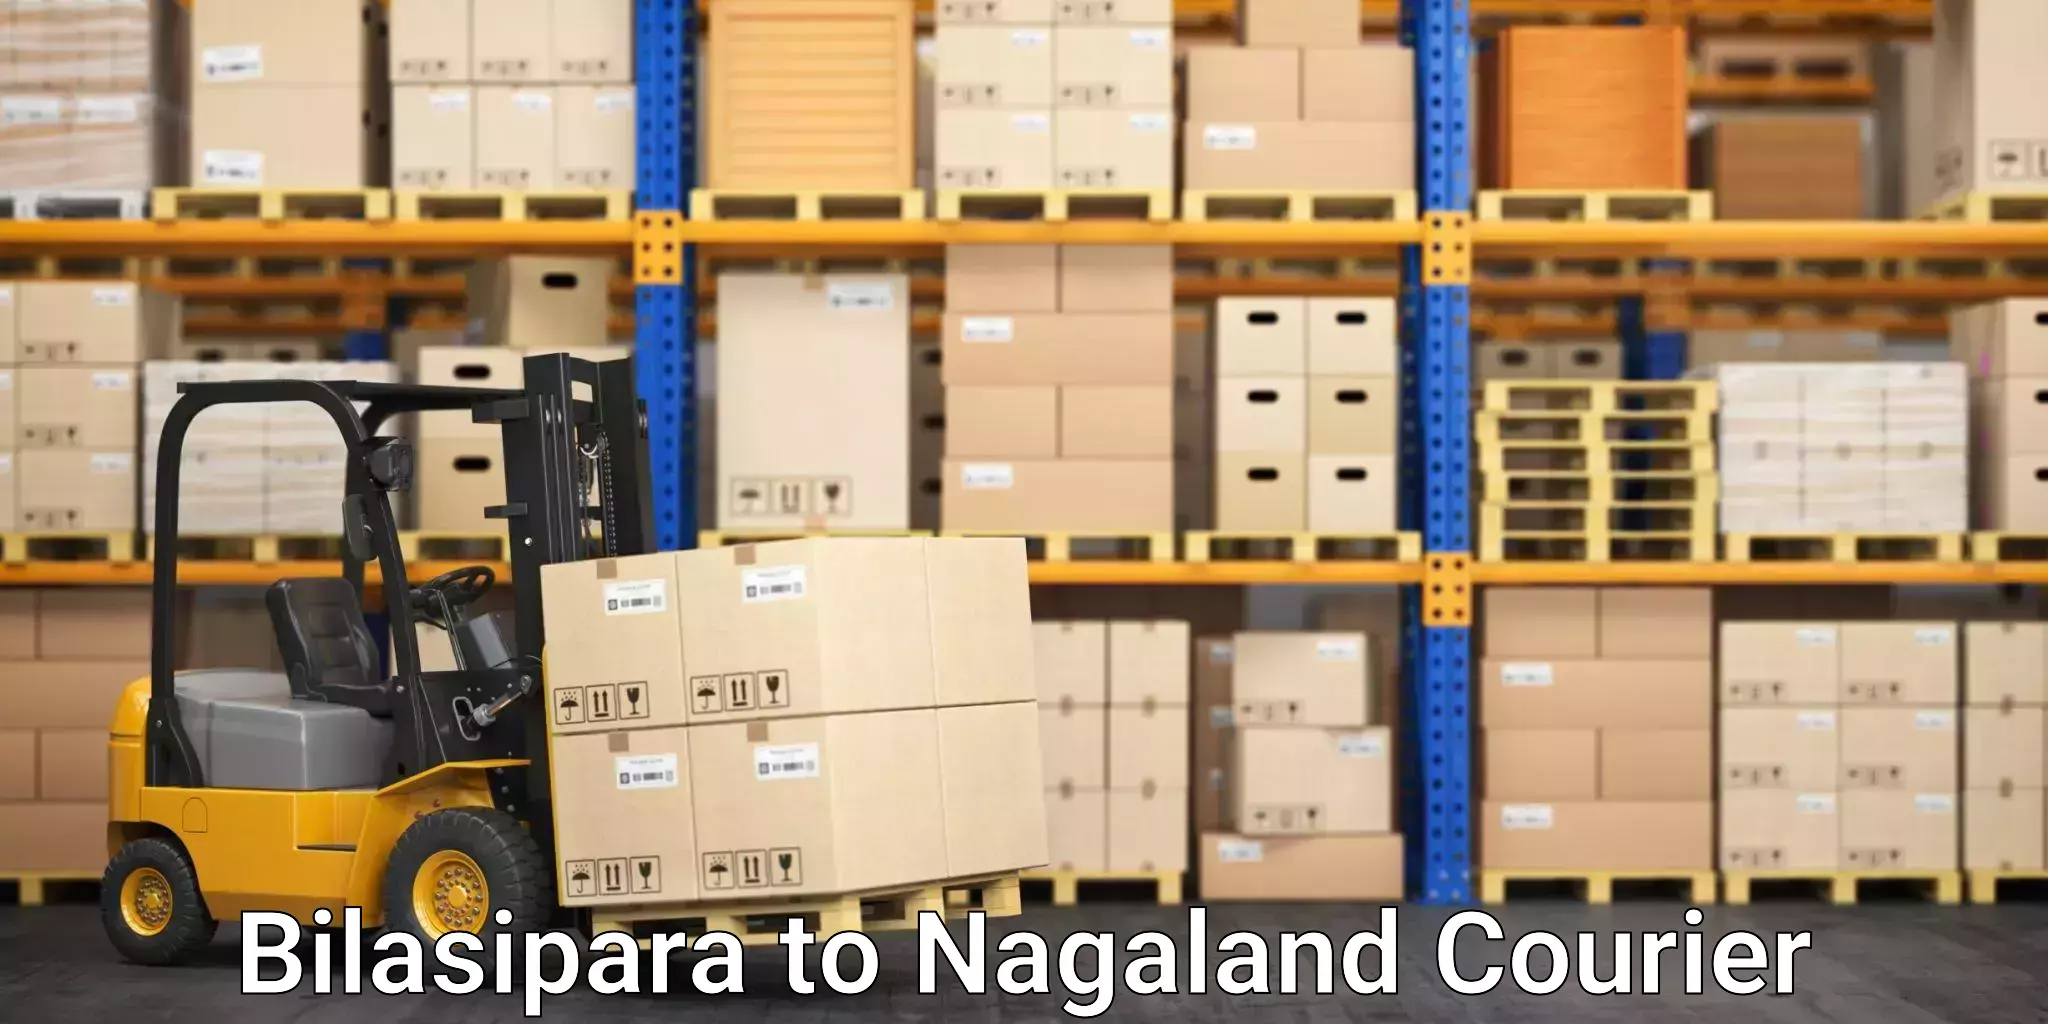 Quick booking process Bilasipara to NIT Nagaland